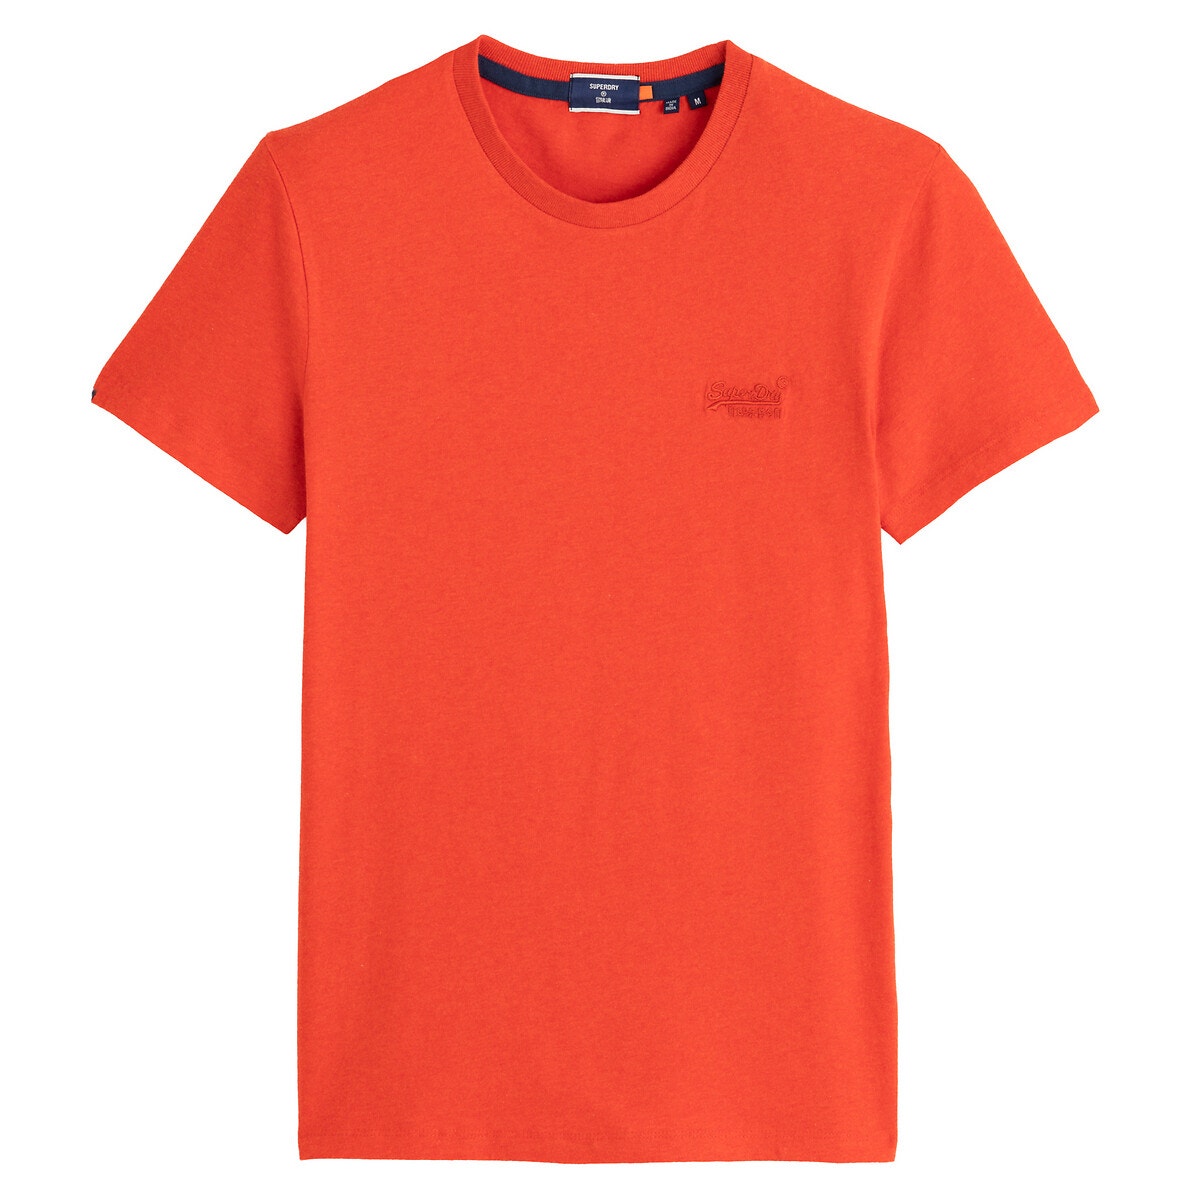 Κοντομάνικο T-shirt με στρογγυλή λαιμόκοψη, Orange Label Vintage